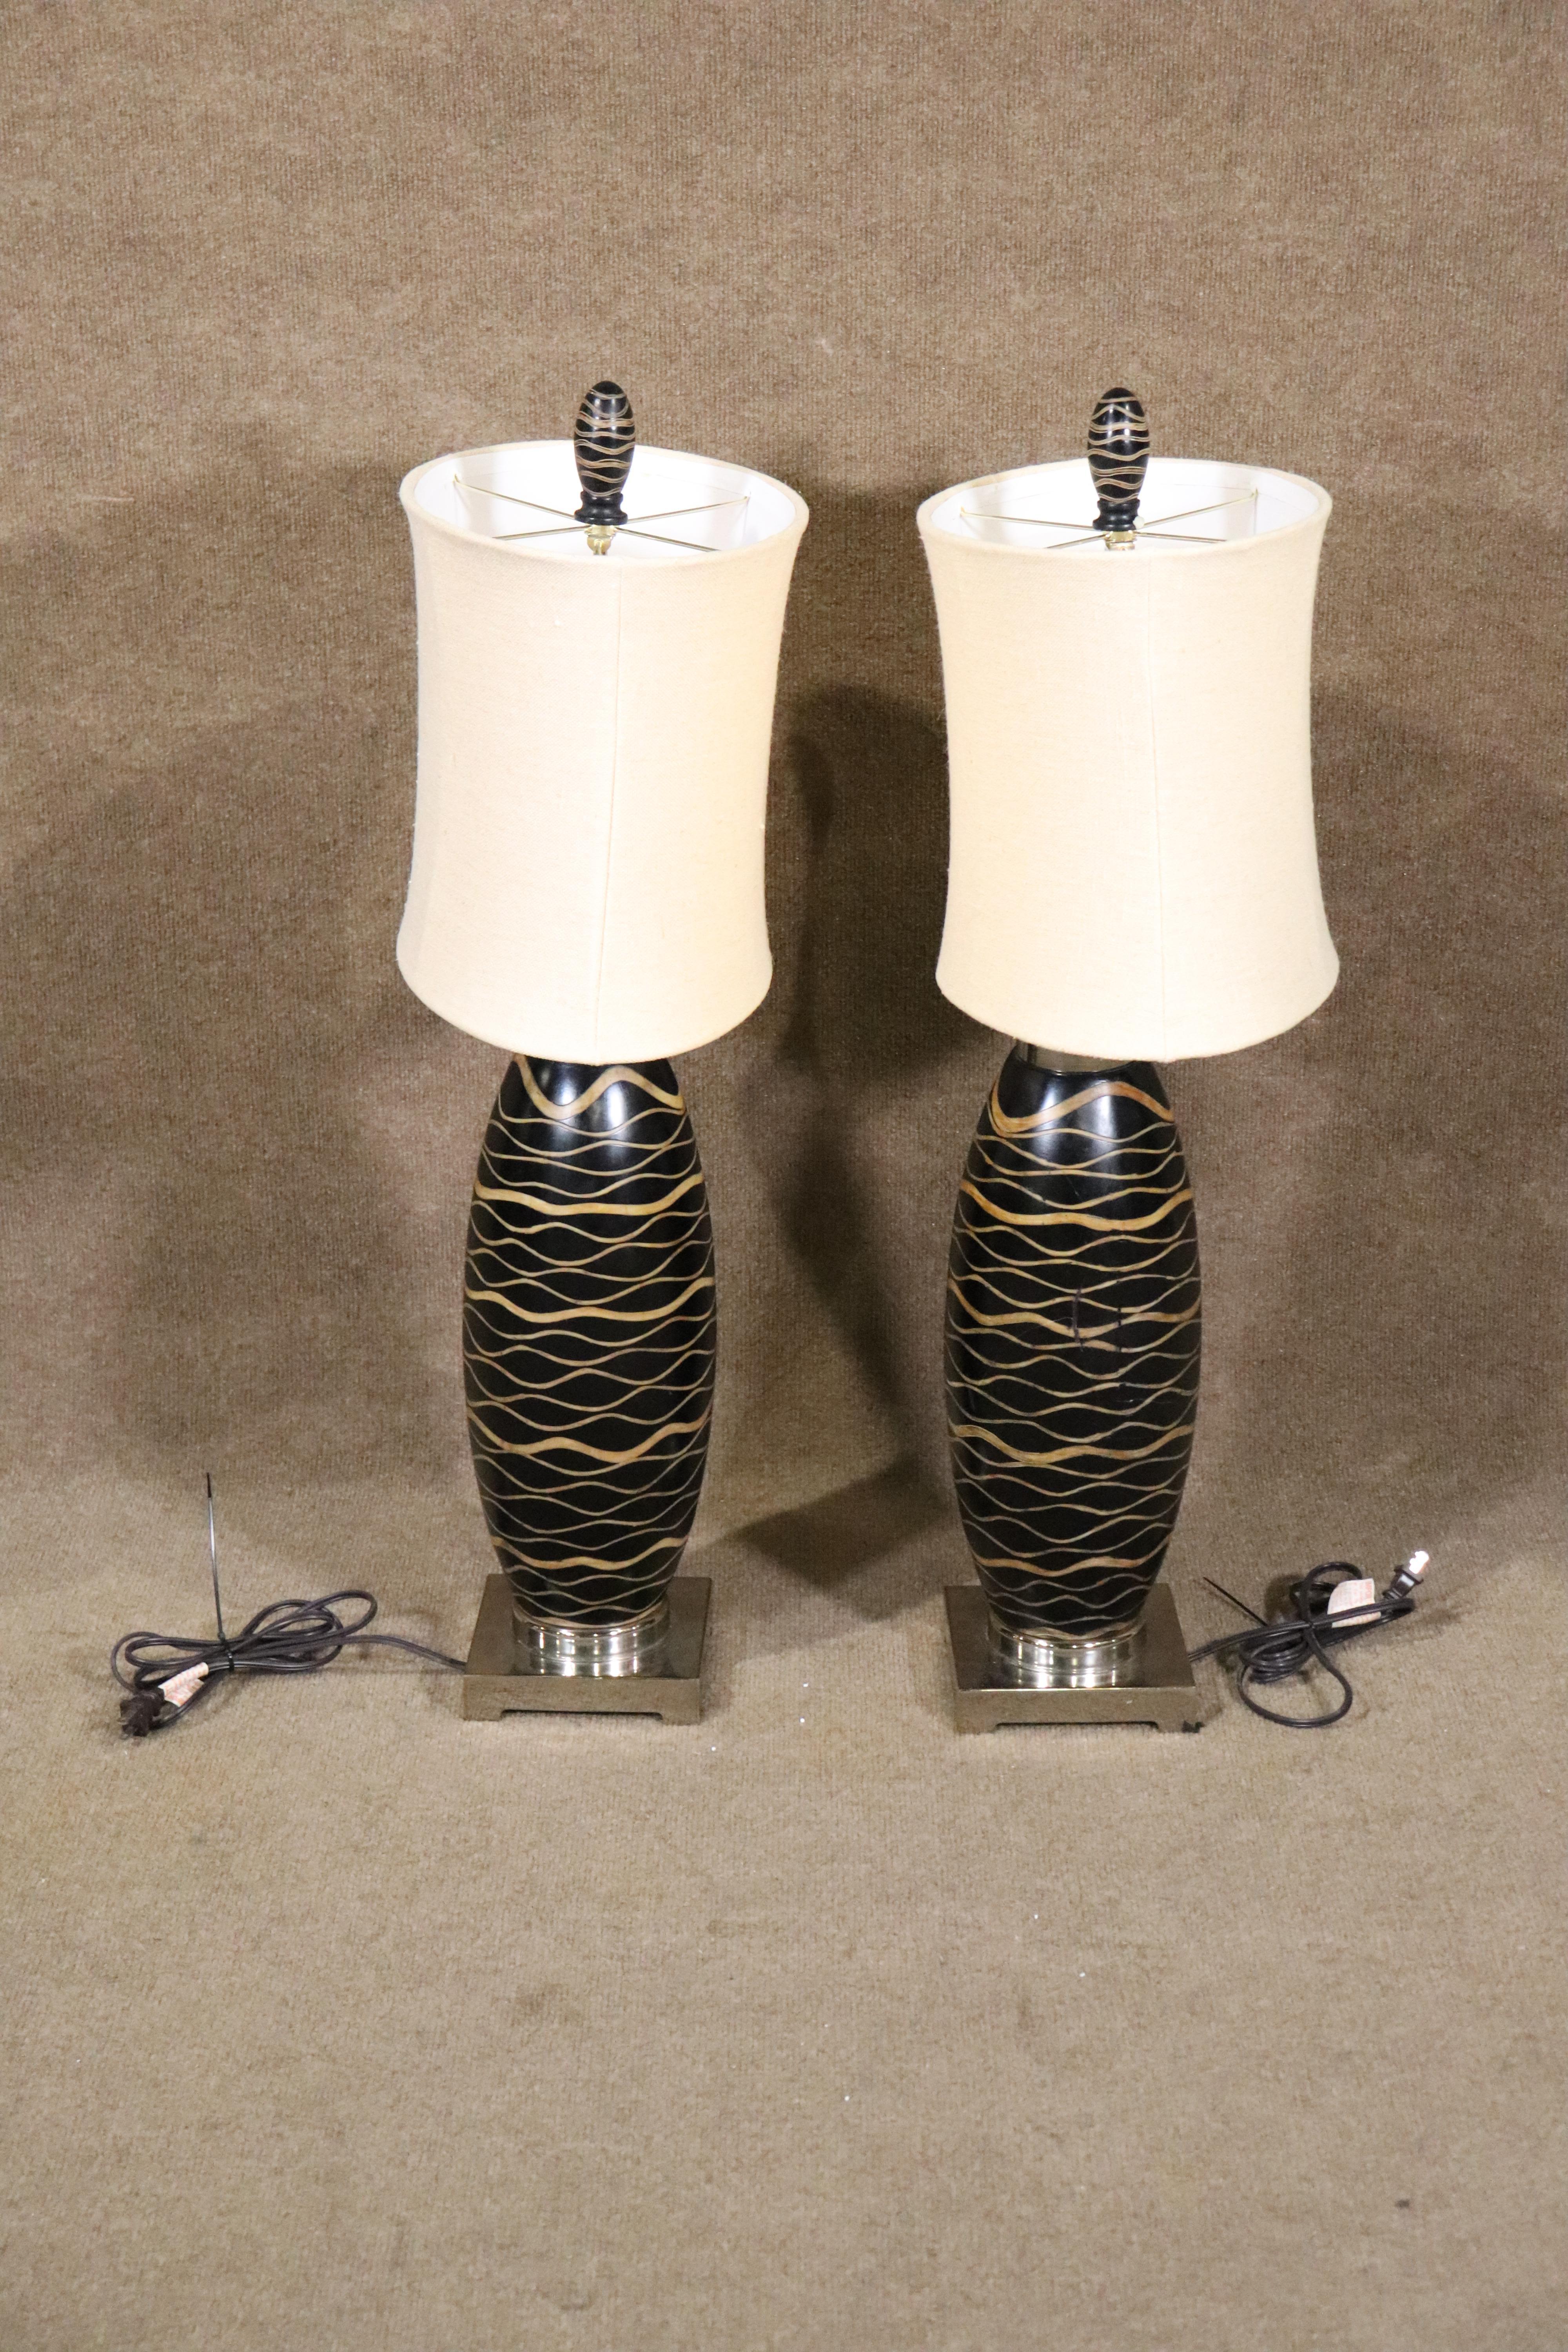 Ein Paar Tischlampen im Deko-Stil mit ovalen Lampenschirmen. Tigerholzmotiv um beide Lampen herum.
Bitte bestätigen Sie den Artikelstandort NY oder NJ.